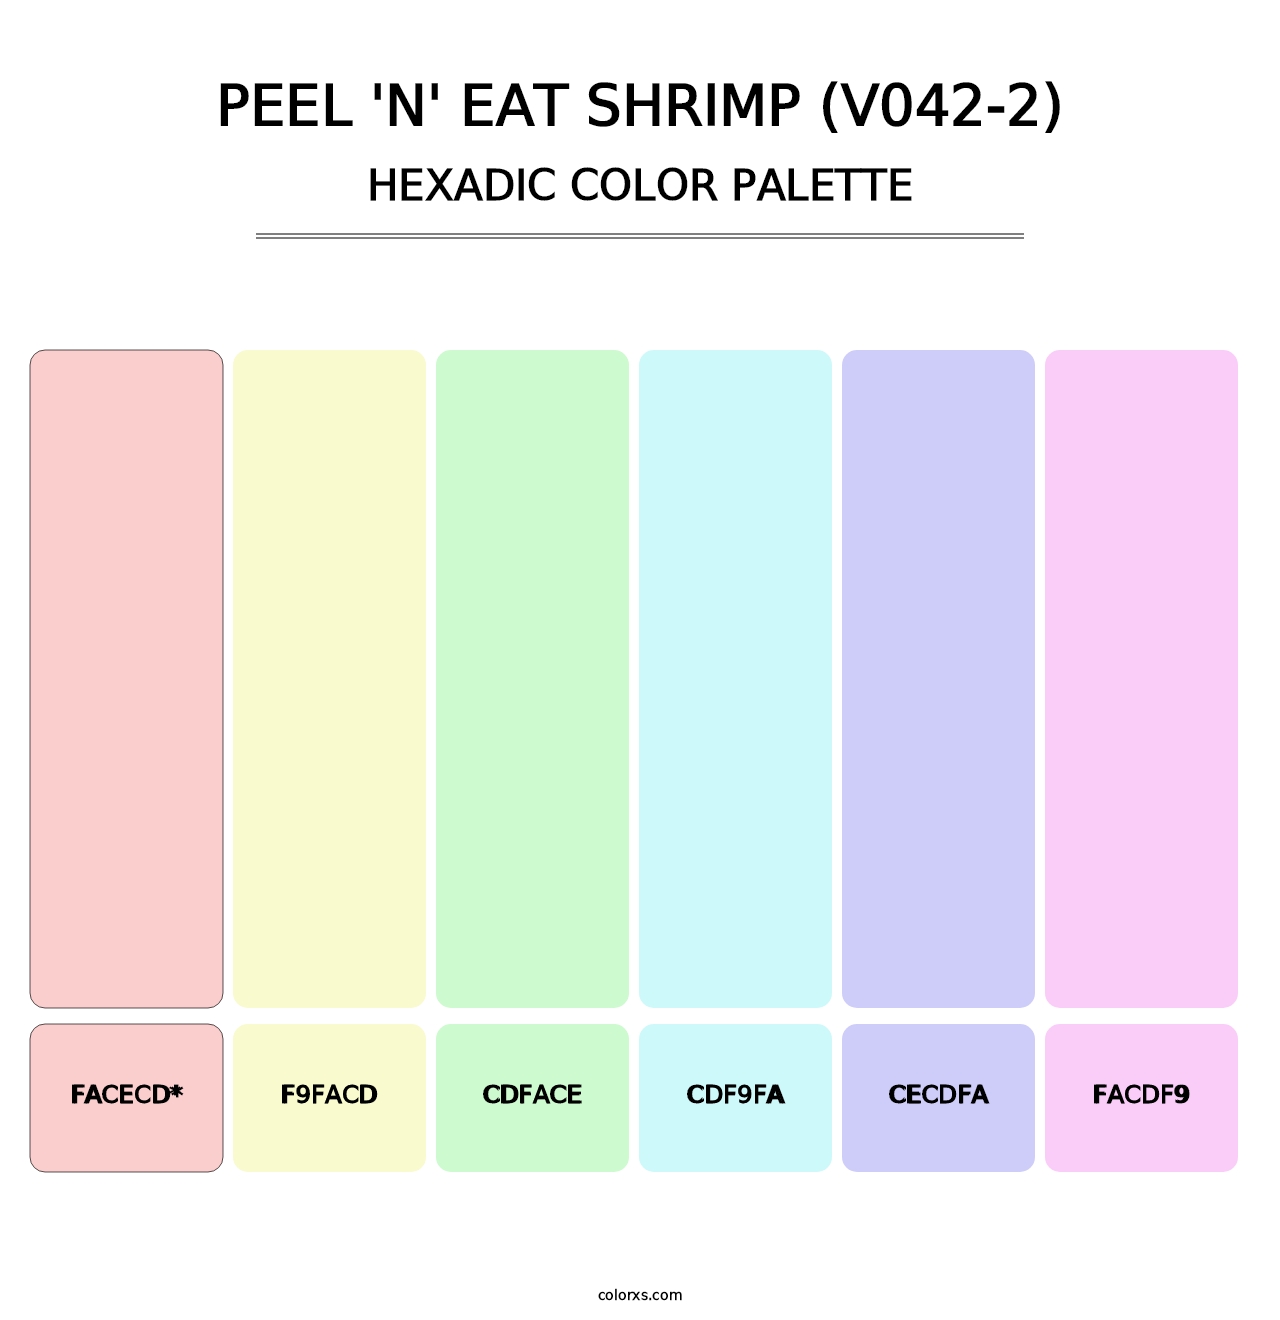 Peel 'n' Eat Shrimp (V042-2) - Hexadic Color Palette